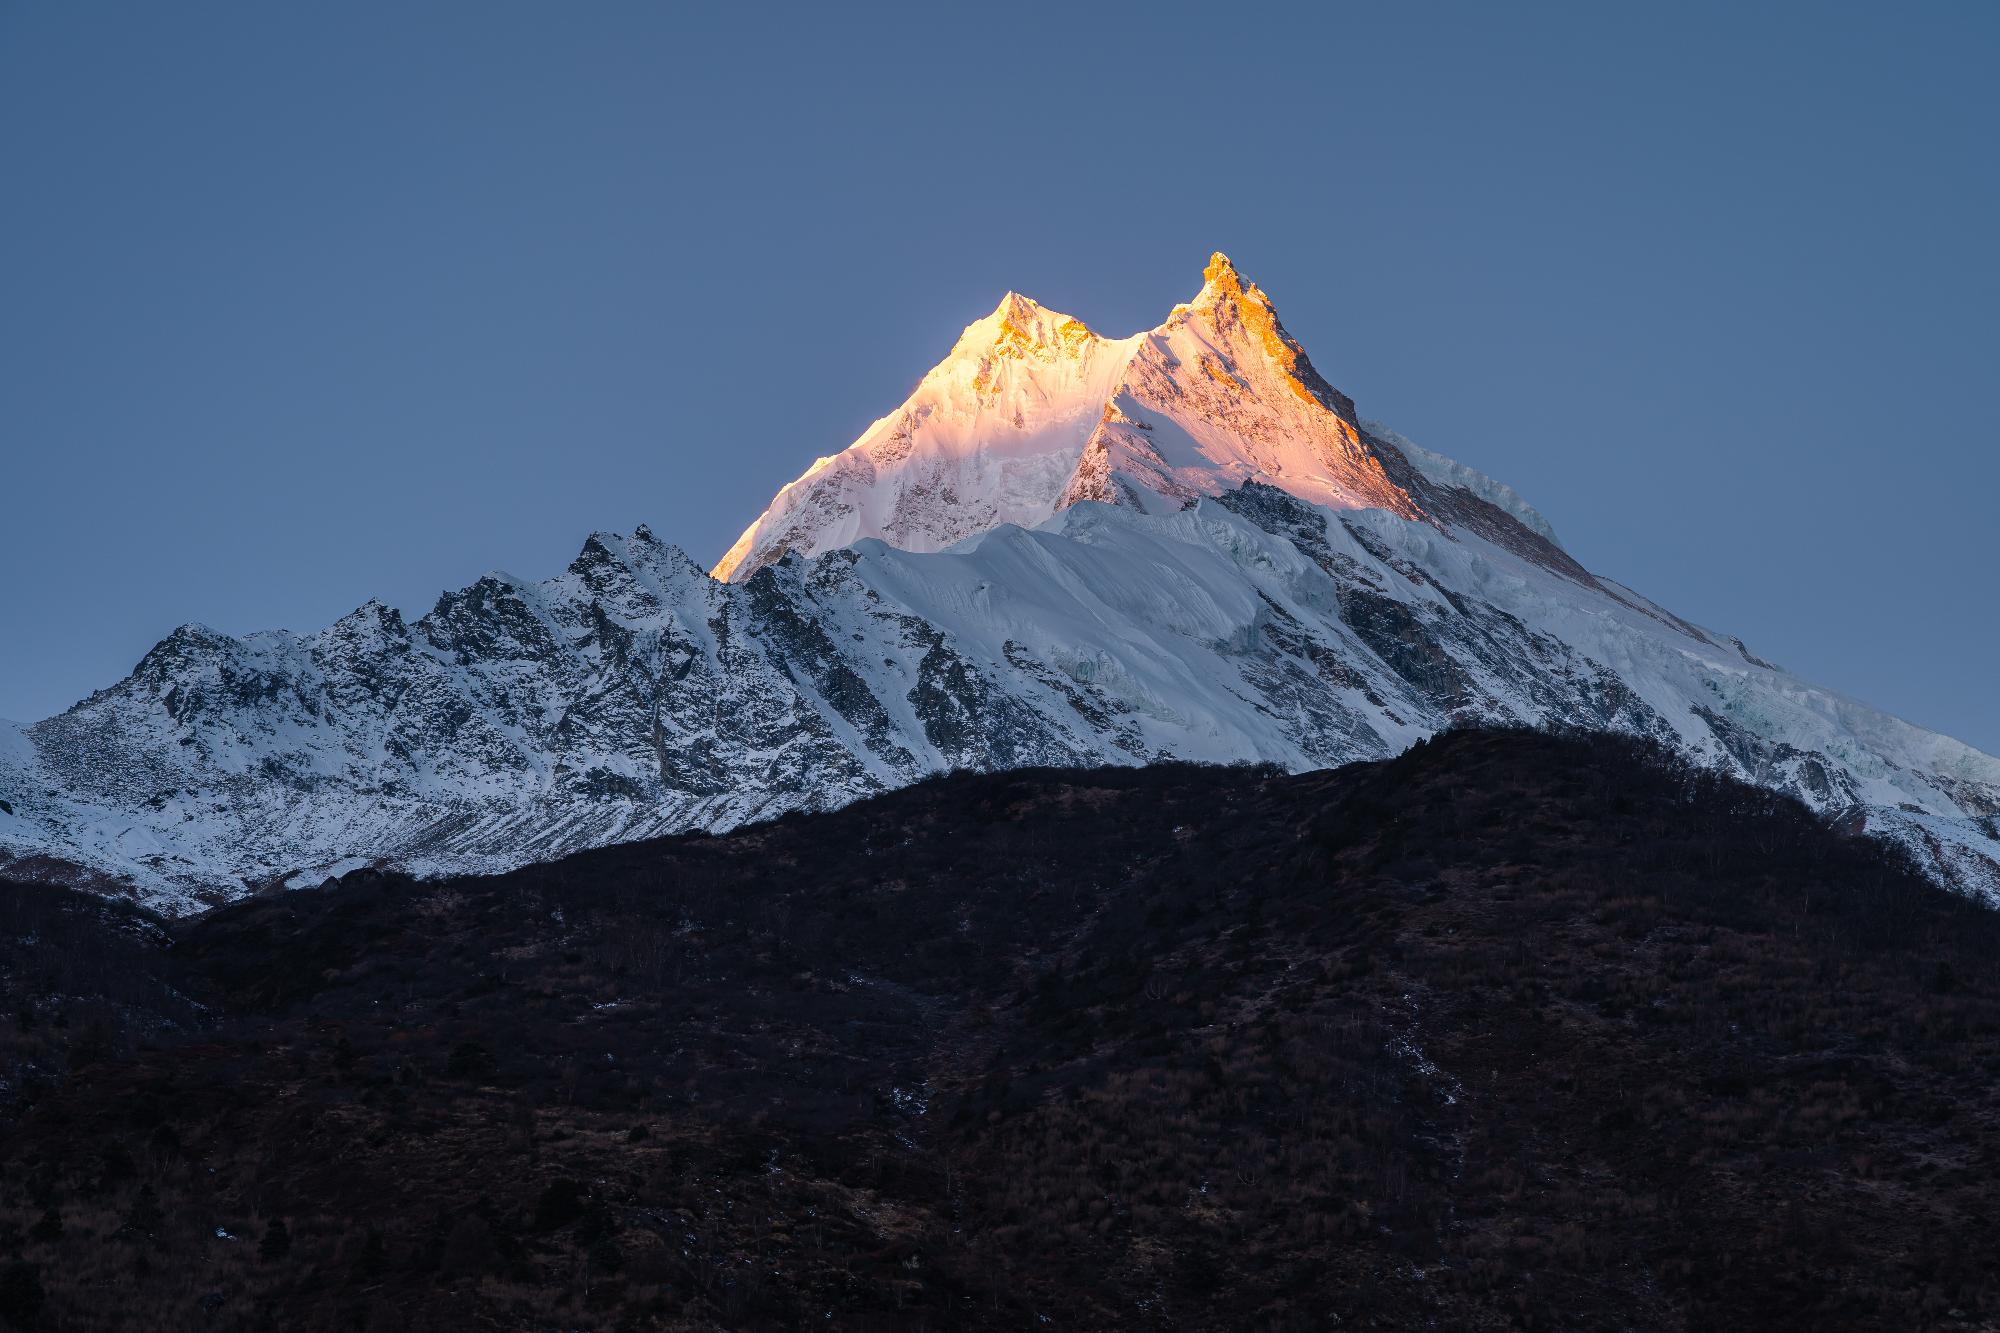 Meghalt a Himalájában Hilaree Nelson Guinness-rekorder síalpinista